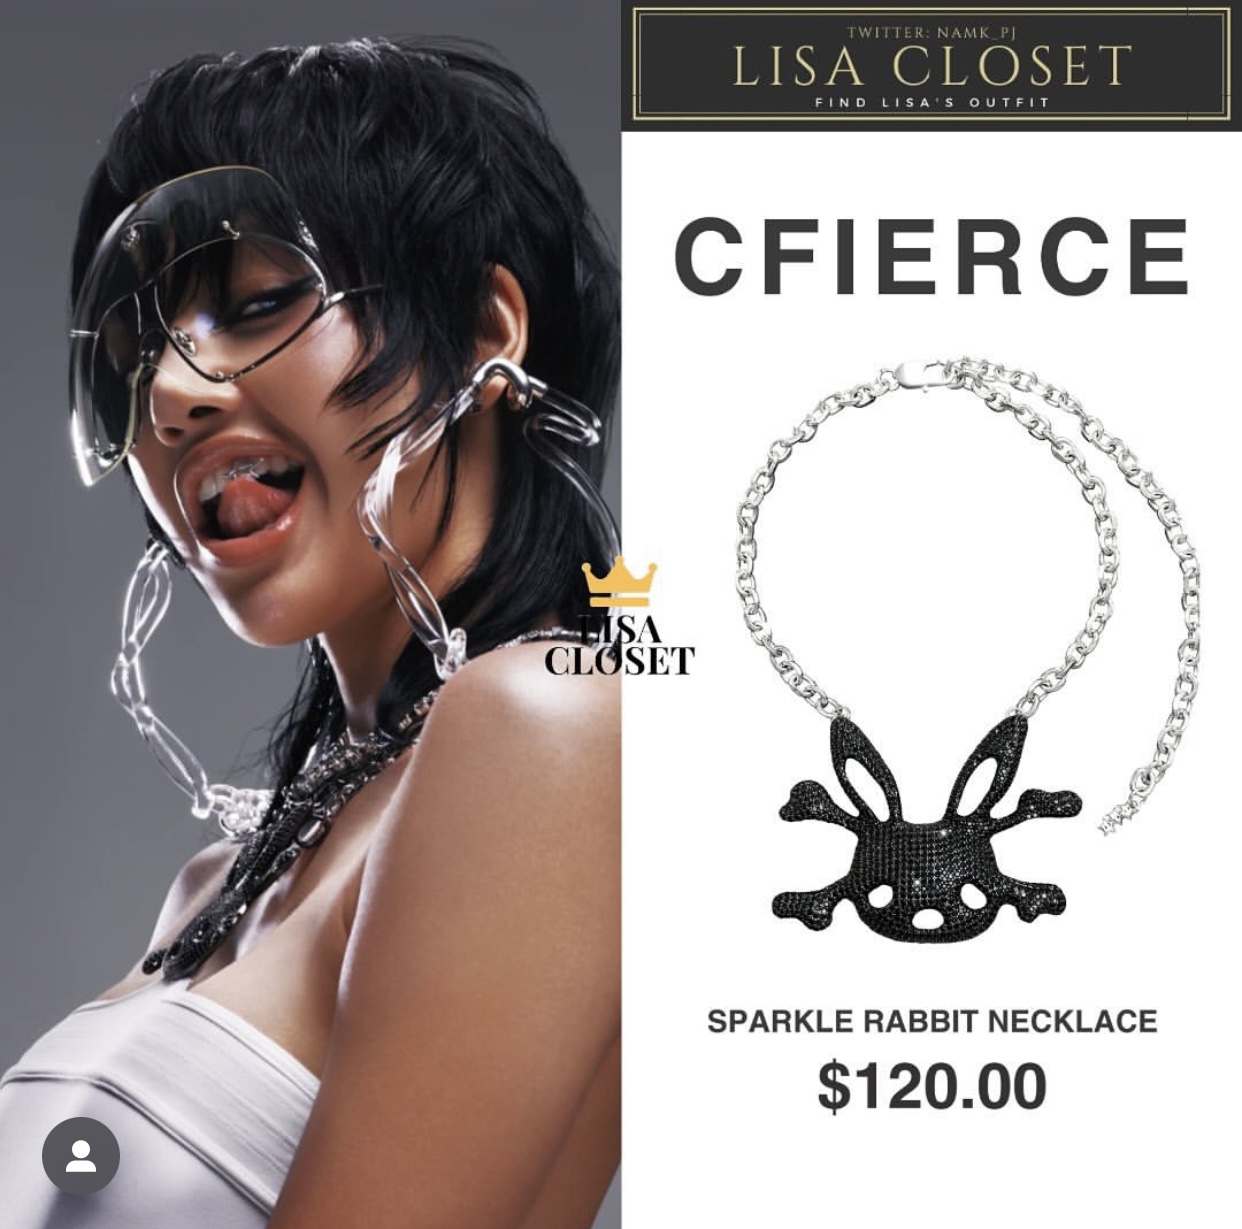 Mẫu vòng cổ kim loại với biểu tượng chú thỏ của thương hiệu Cfierce có giá bình dân nhất trong loạt phụ kiện được Lisa đầu tư cho MV Rockstar, item này có giá 120 USD (khoảng 3 triệu đồng).